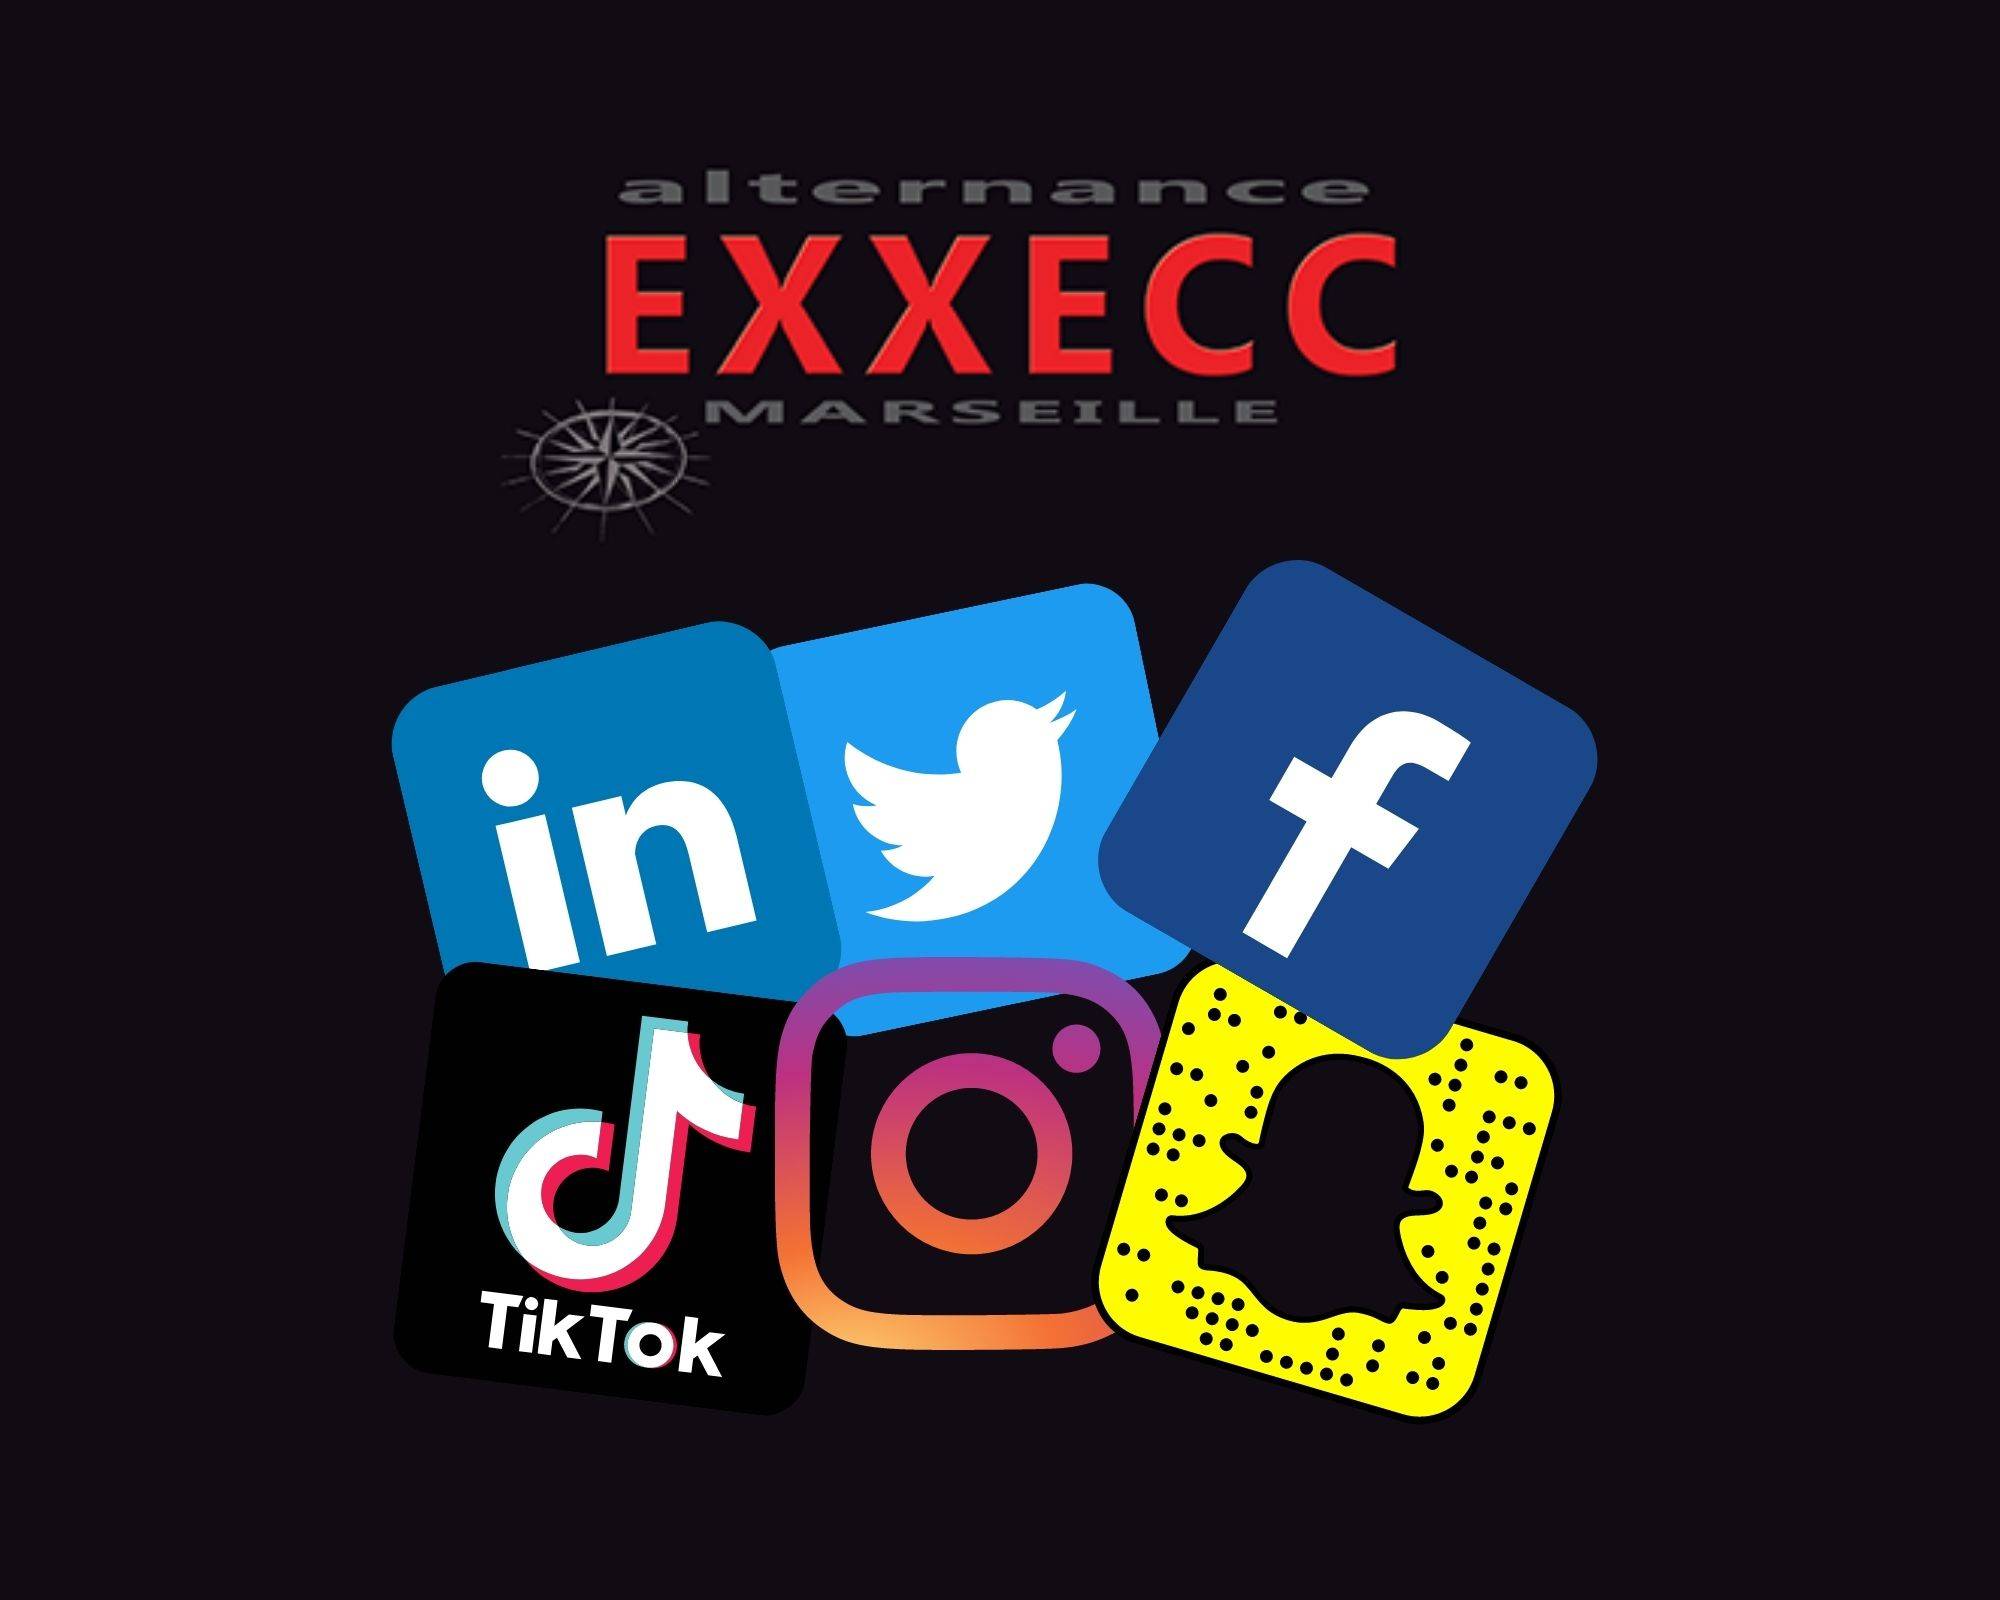 Est-ce que l’Alternance EXXECC est présente sur les réseaux sociaux ?